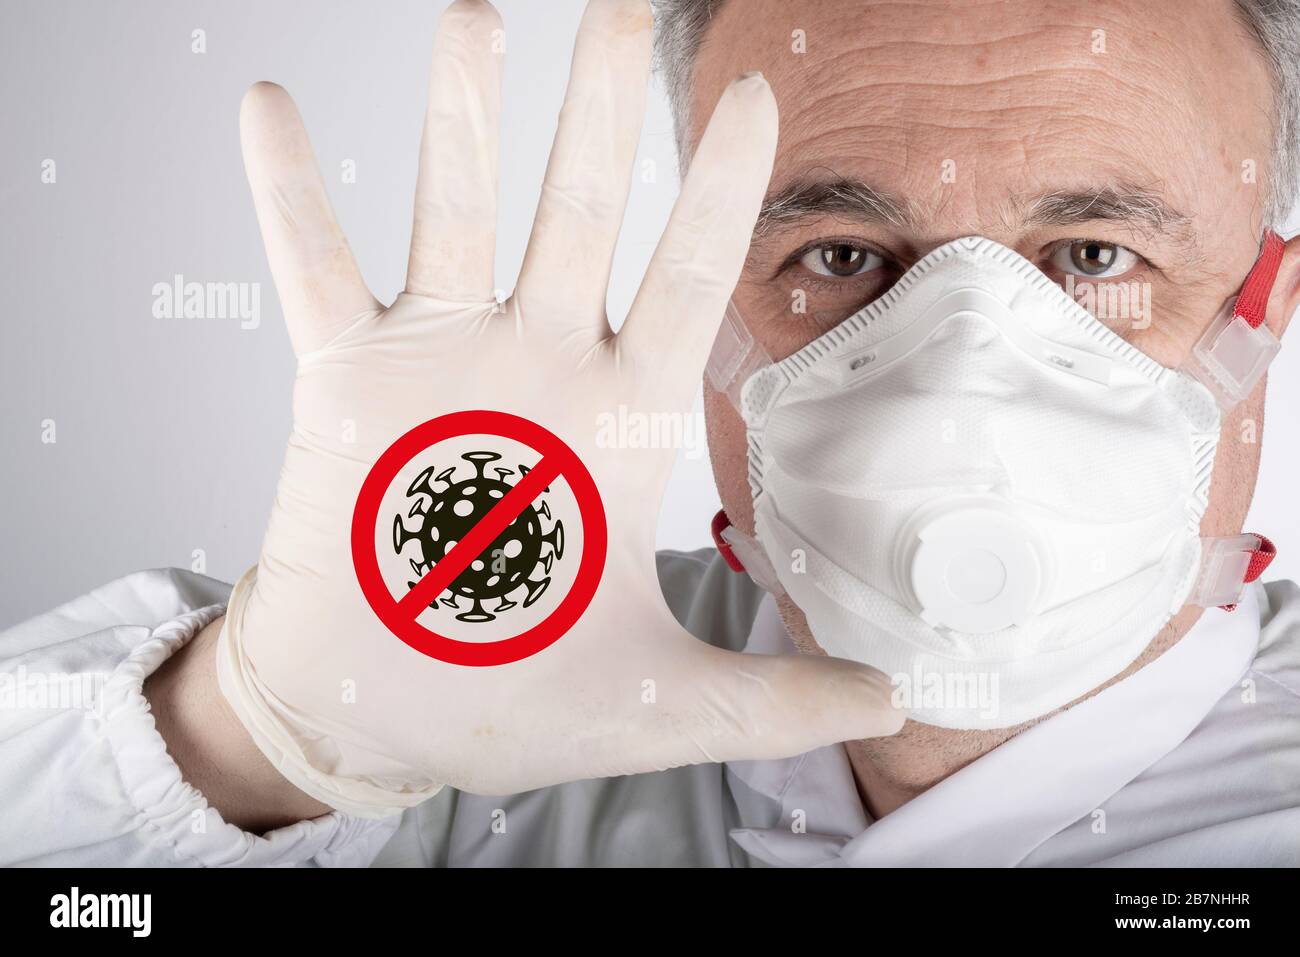 Coronavirus, concept de Covid-19. Le médecin avec masque de protection montre la main pour l'éclosion de virus de la couronne d'arrêt (2019-nCoV). Banque D'Images